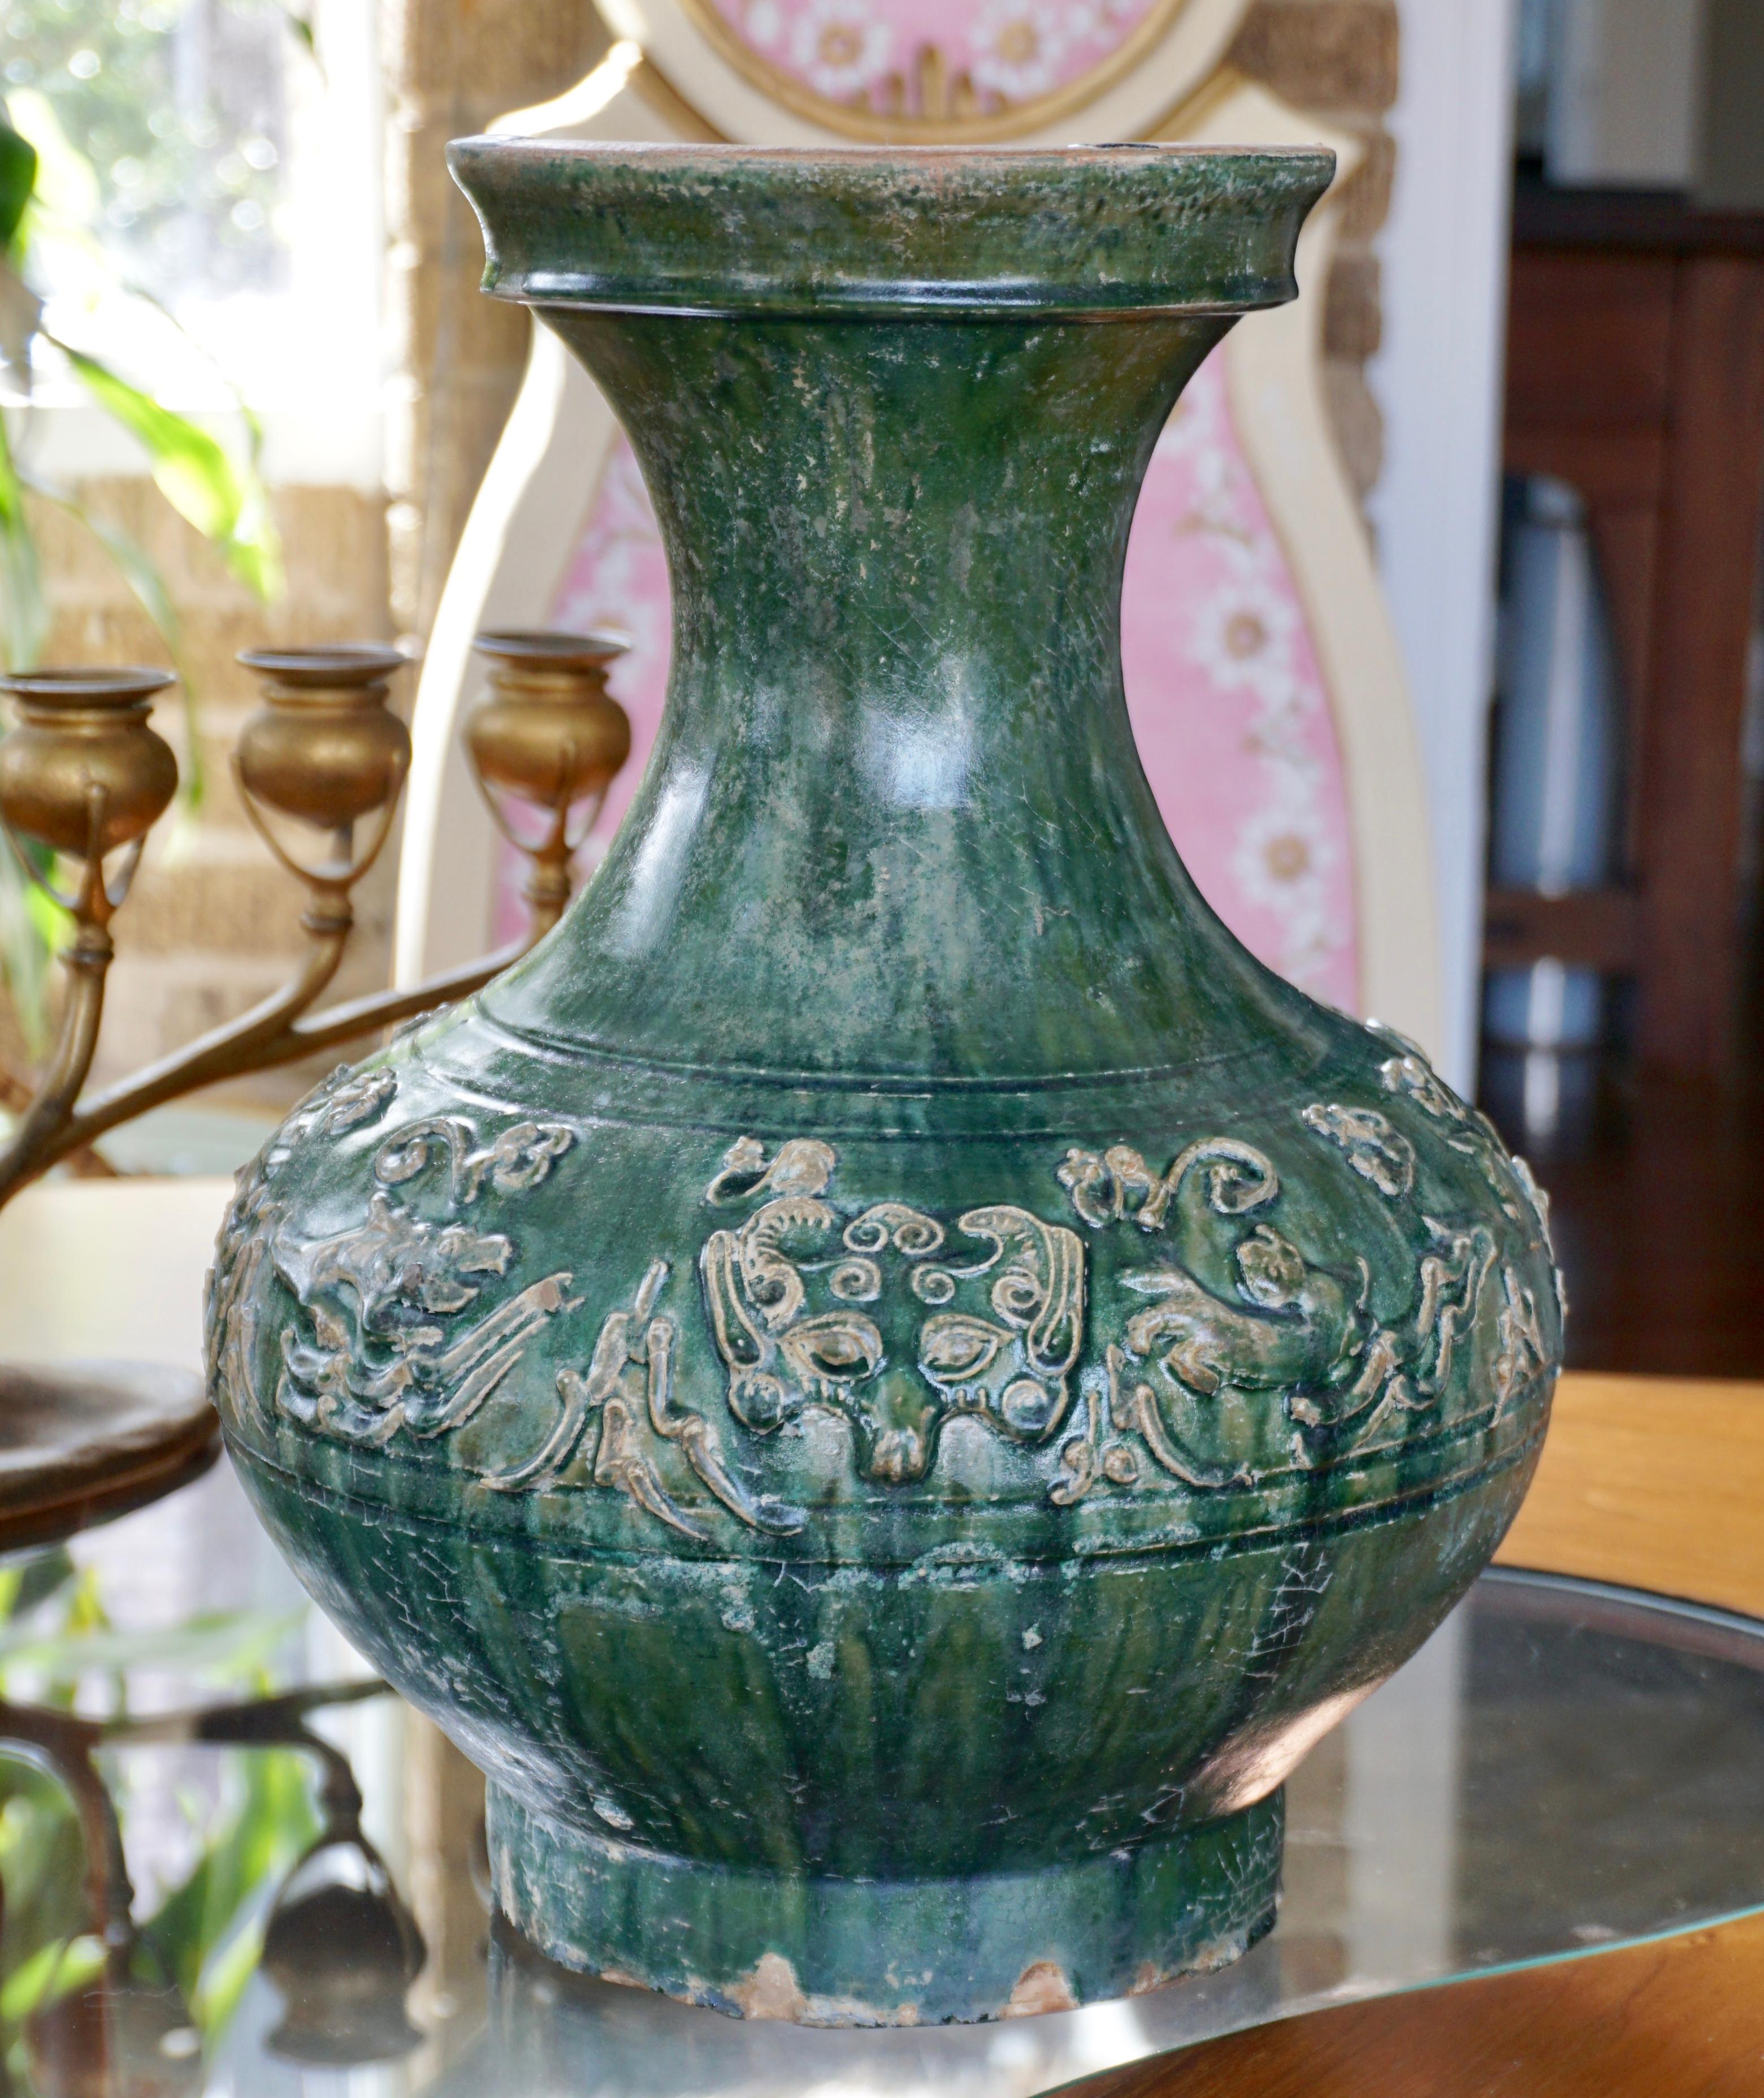 Grand vase hu décoratif en poterie chinoise à glaçure verte.

La dynastie Han (206 av. J.-C. - 220 apr. J.-C.). 

Le corps globulaire comprimé est entouré de huit bêtes mystiques : singes, lapins, cerfs, lions, chiens et chats. Les bêtes sont